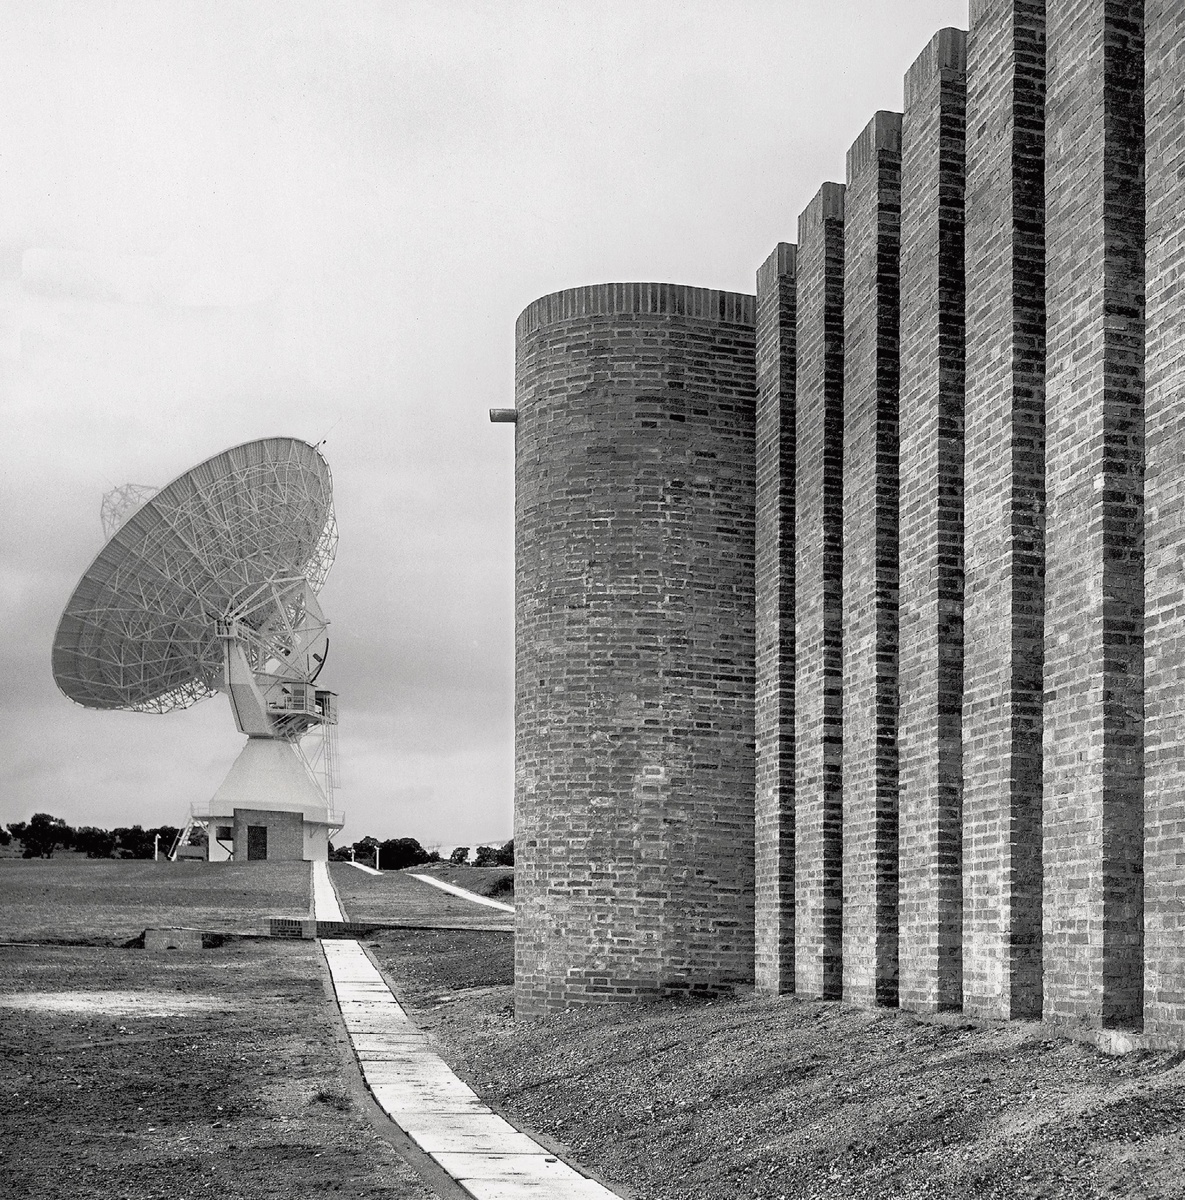  Central de comunicaciones vía satélite de Telefónica (Estación Comunicaciones por satélite de la CTNE)